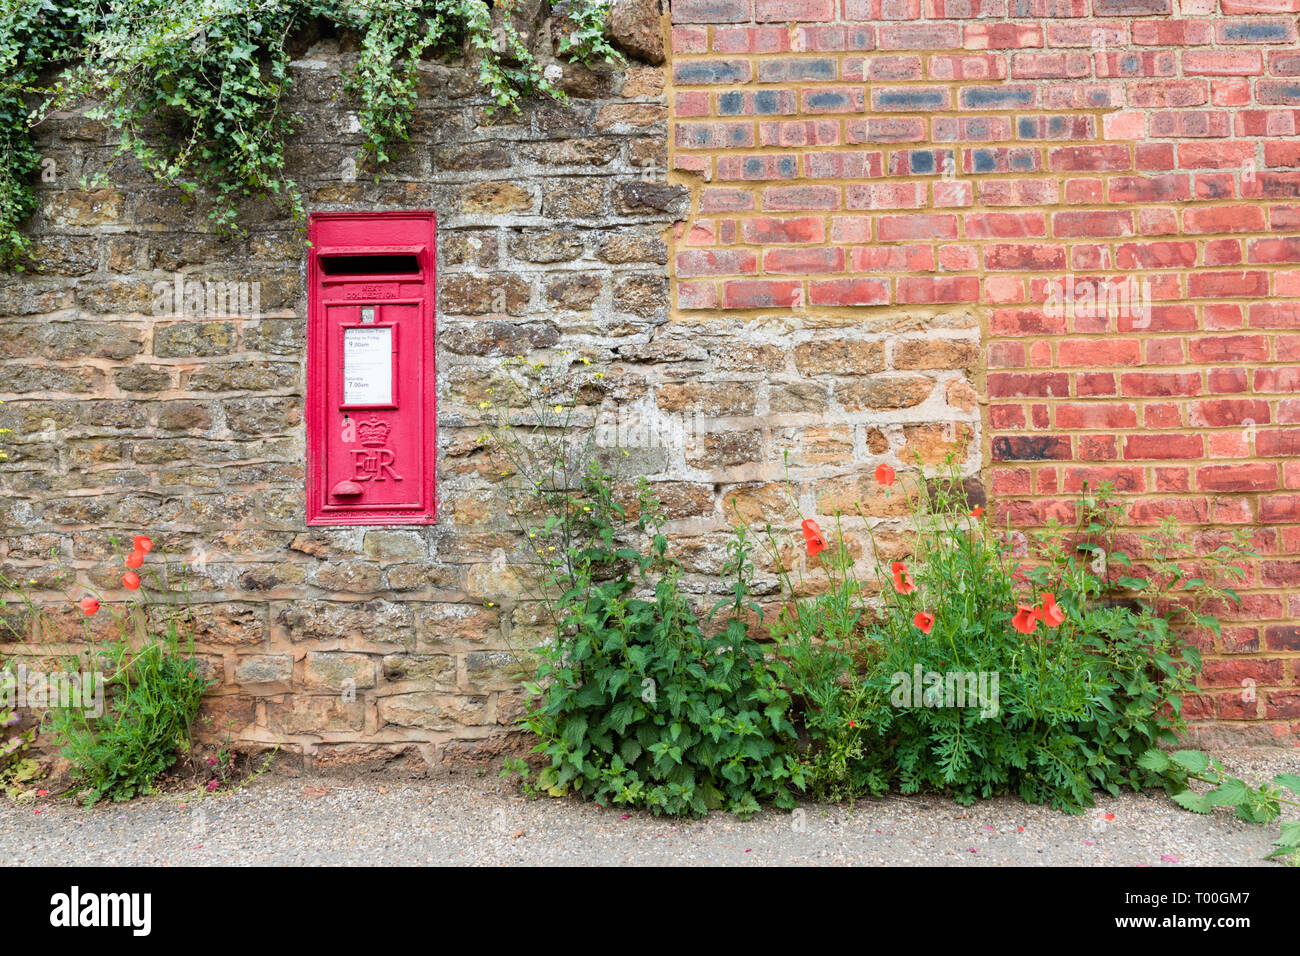 Un villaggio rosso post box set in un muro di pietra. Ivy pende sopra la parte superiore della parete e in fondo il papavero e di ortiche sono in crescita. Foto Stock